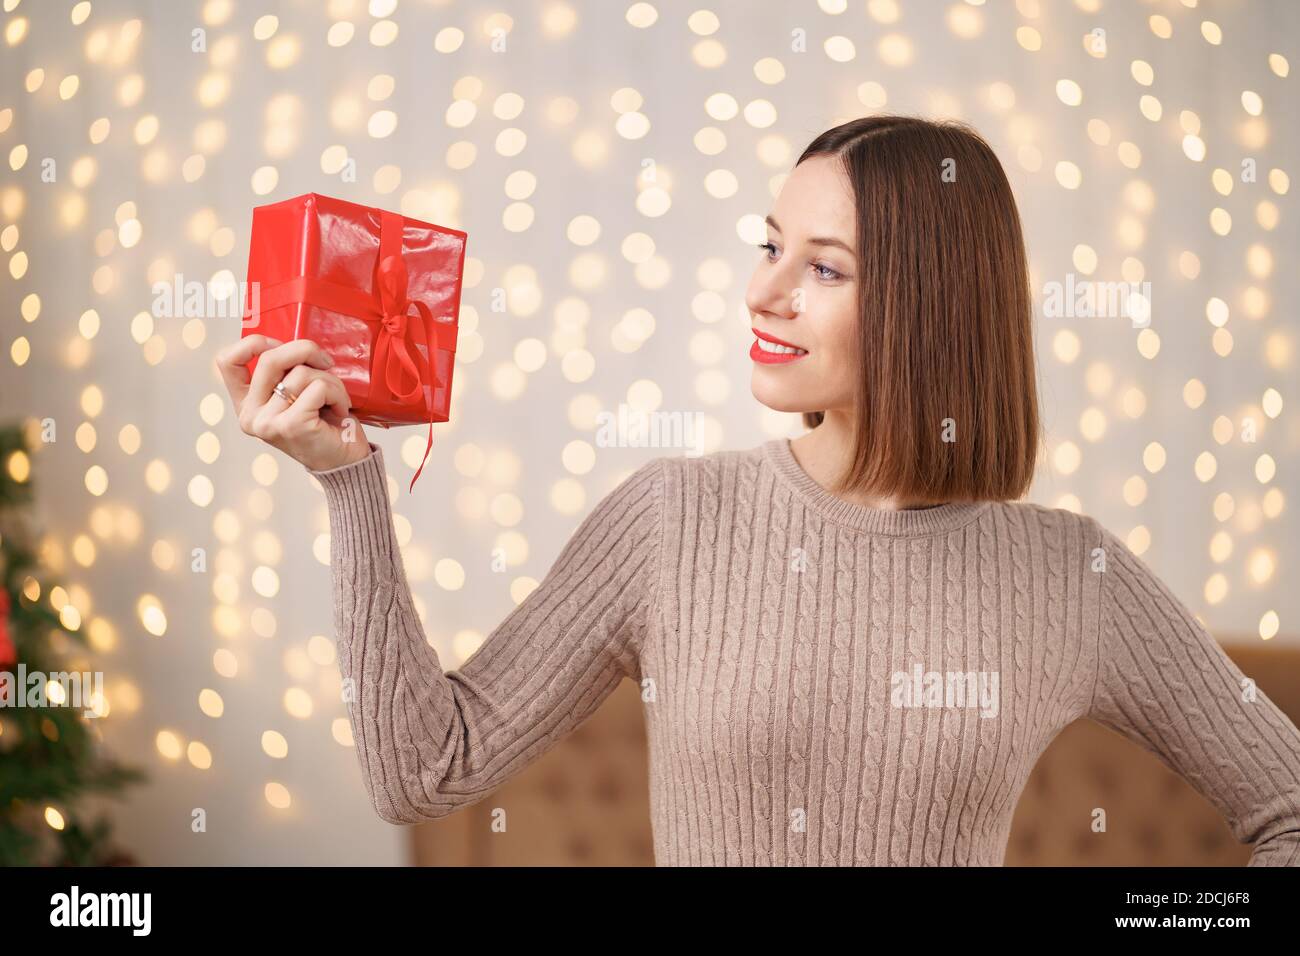 Portrait de jeune femme heureuse lèvres rouges regardant la boîte cadeau emballée. Gros plan la femme satisfaite a reçu la boîte actuelle. Arrière-plan des lumières de Noël festives Banque D'Images